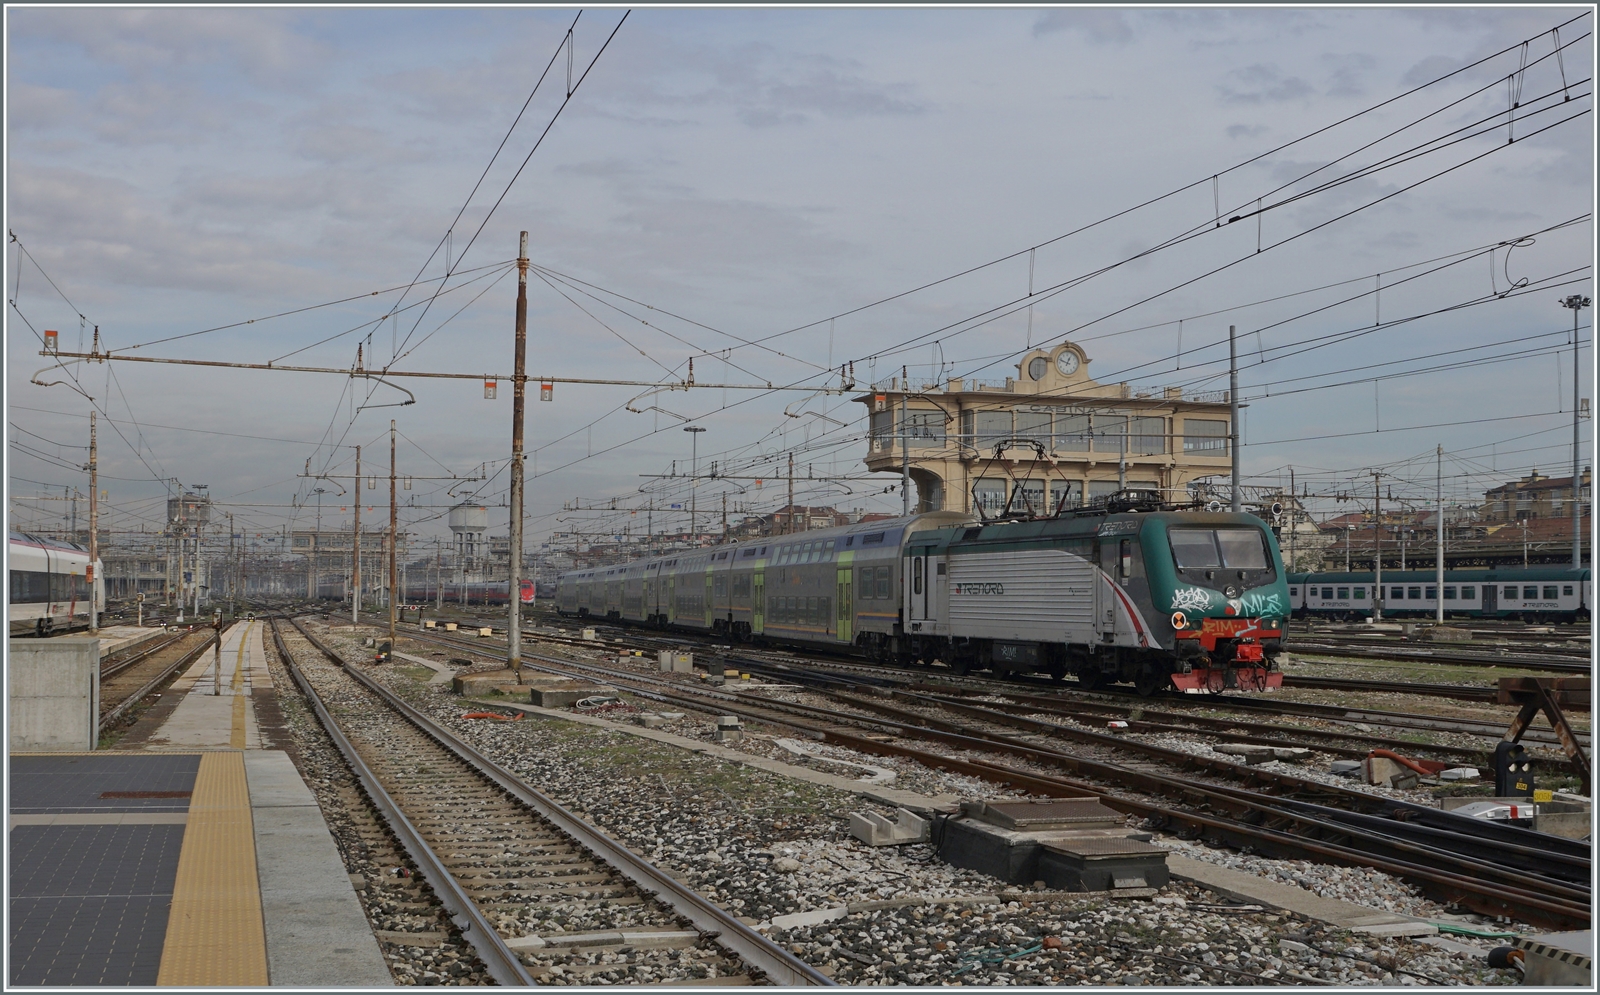 Die Trenord (TN-I) E 464 272 erreicht mit einem Nahverkehrszug ihr Ziel Milano Centrale

8. Nov. 2022

